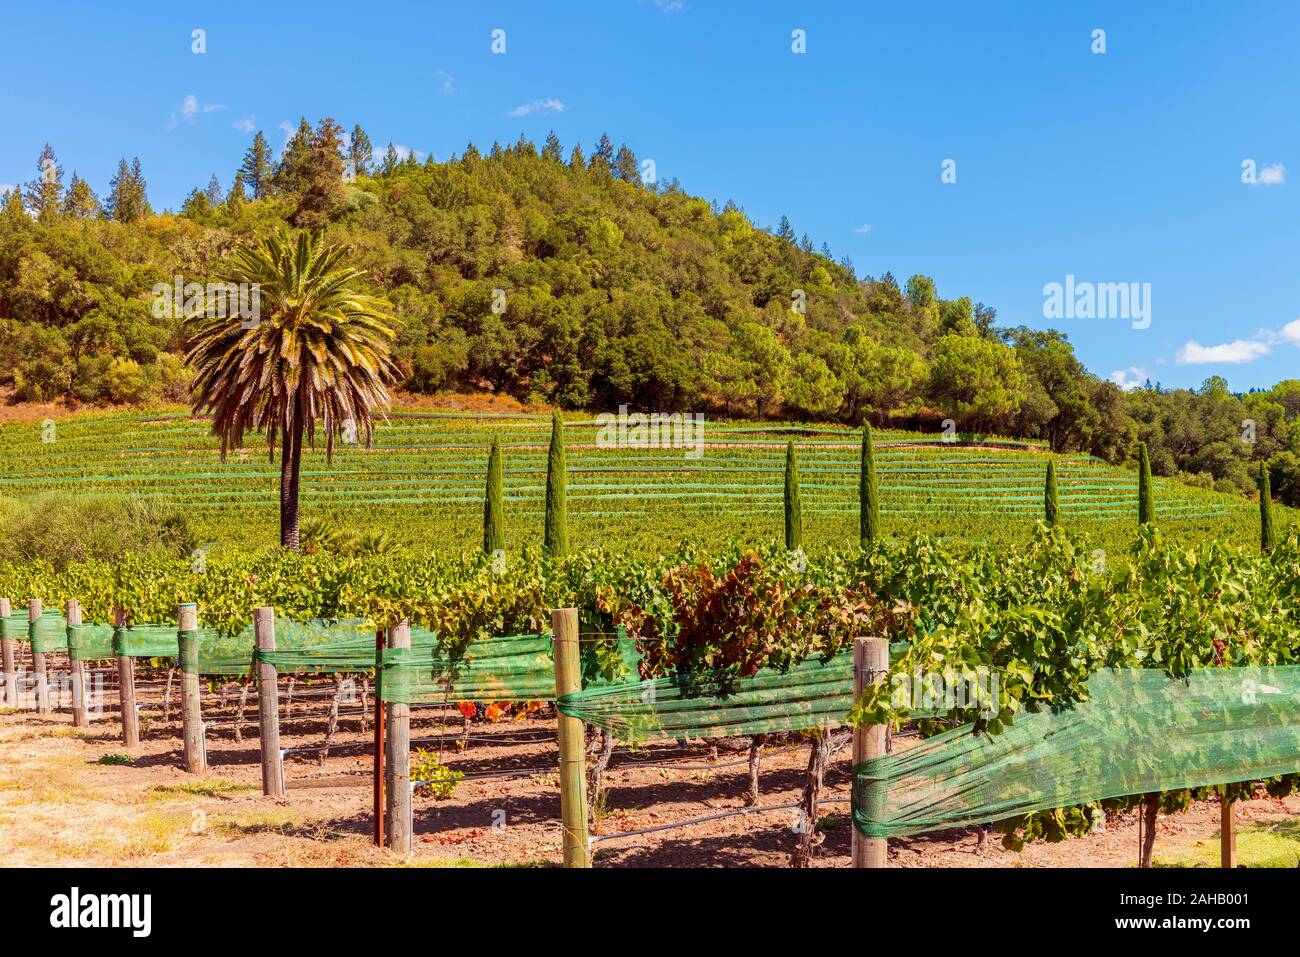 Palme in einem Weinberg in Napa Valley, Napa County, Kalifornien, USA. Napa County ist für seine regionalen Wein Industrie bekannt. Stockfoto